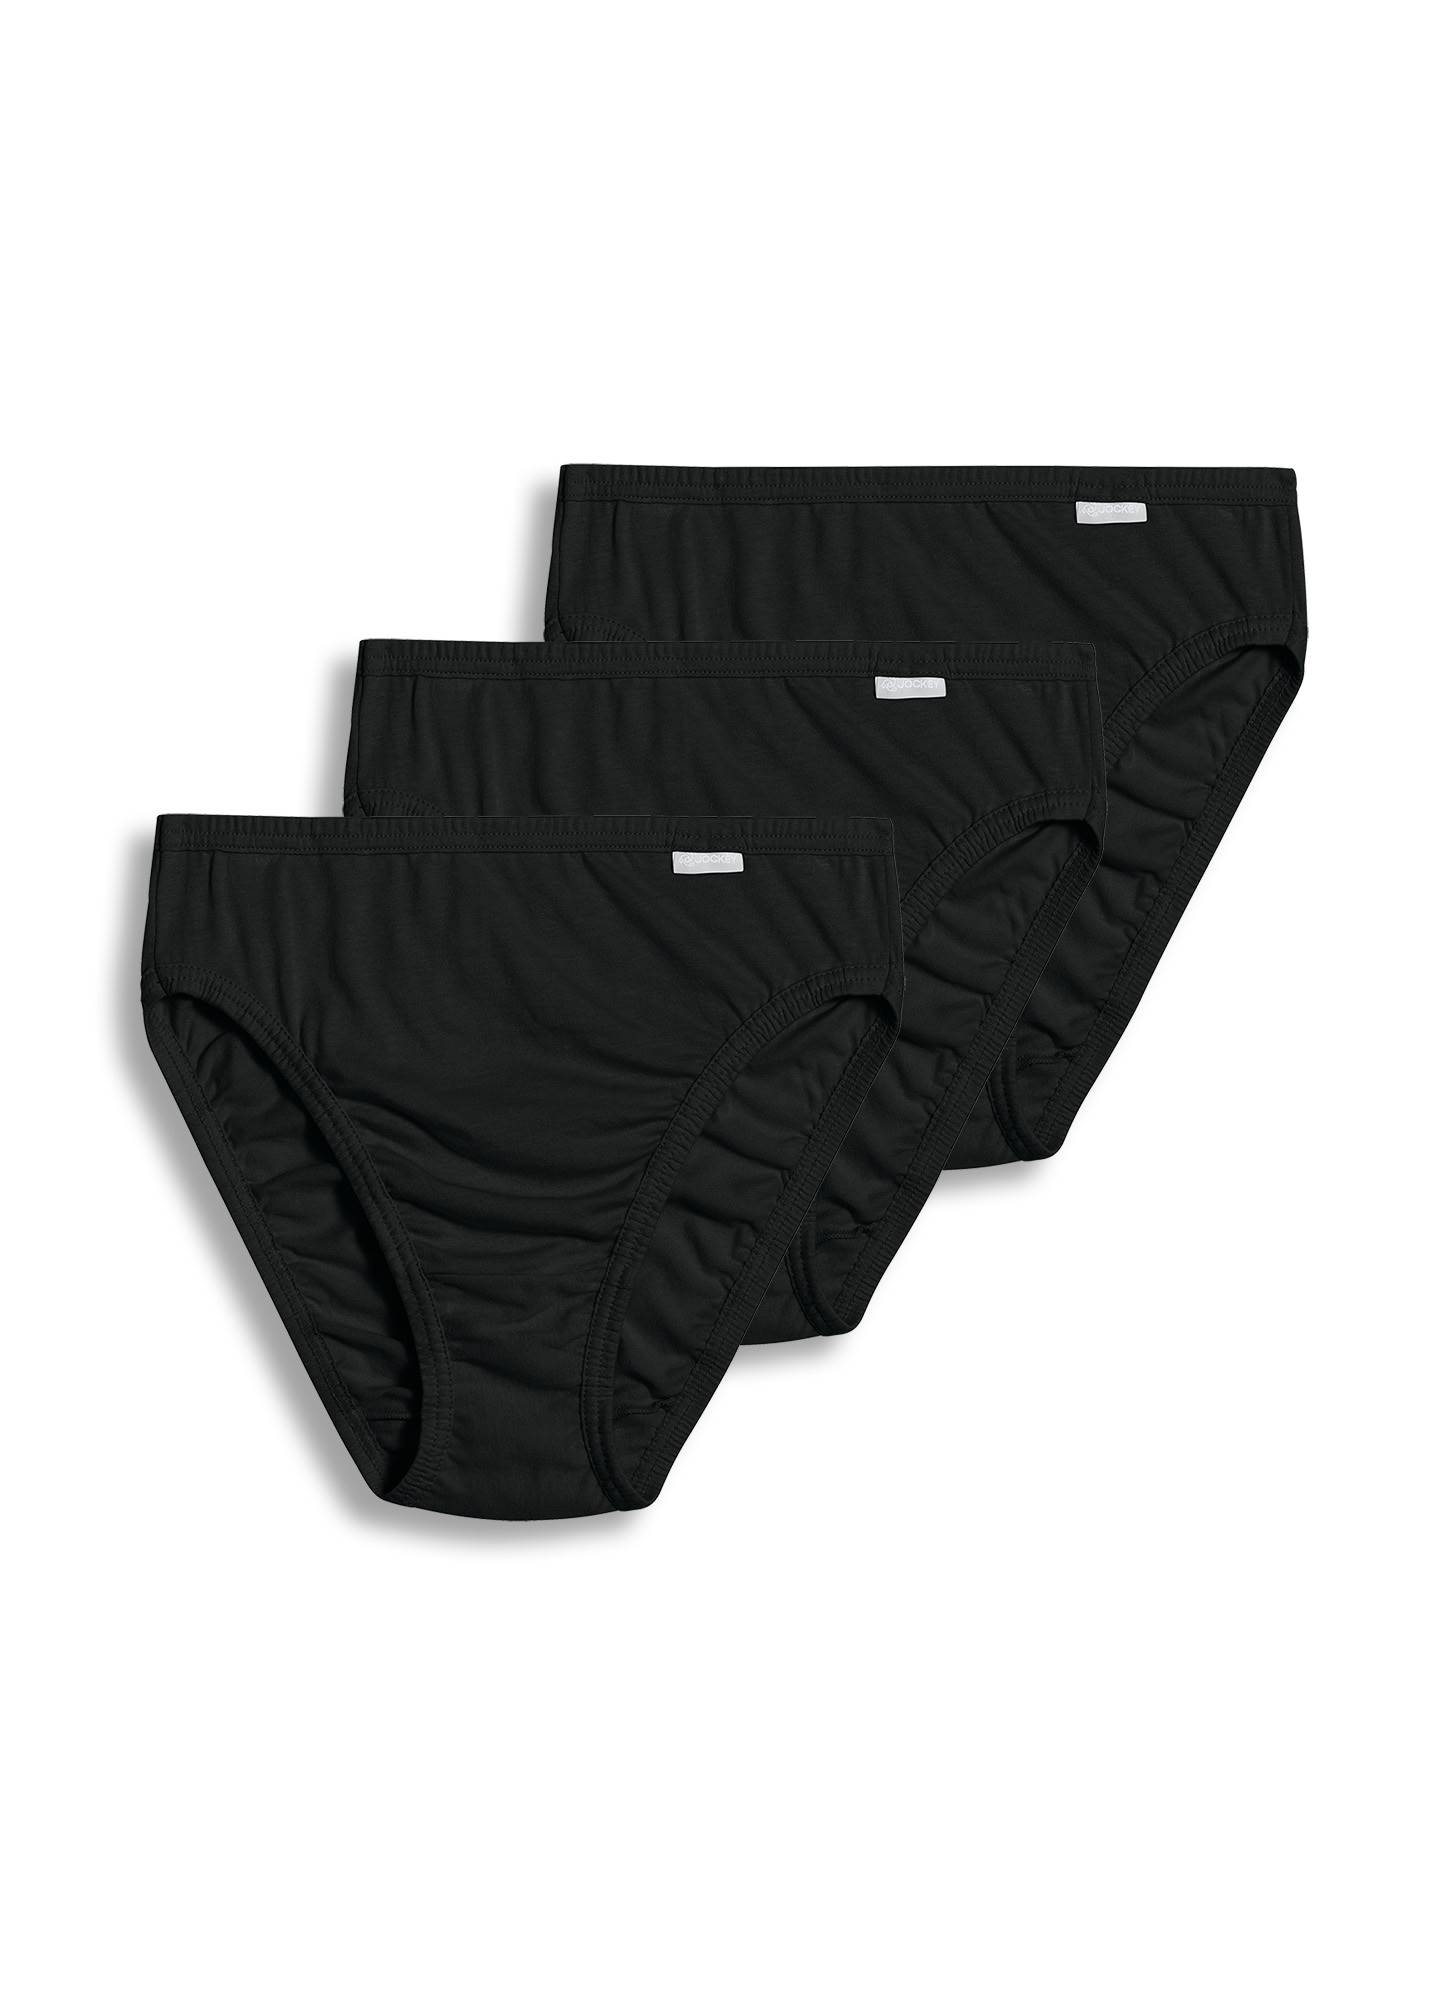 Jockey Panties Women's Underwear Elance Size 11 French Cut Style